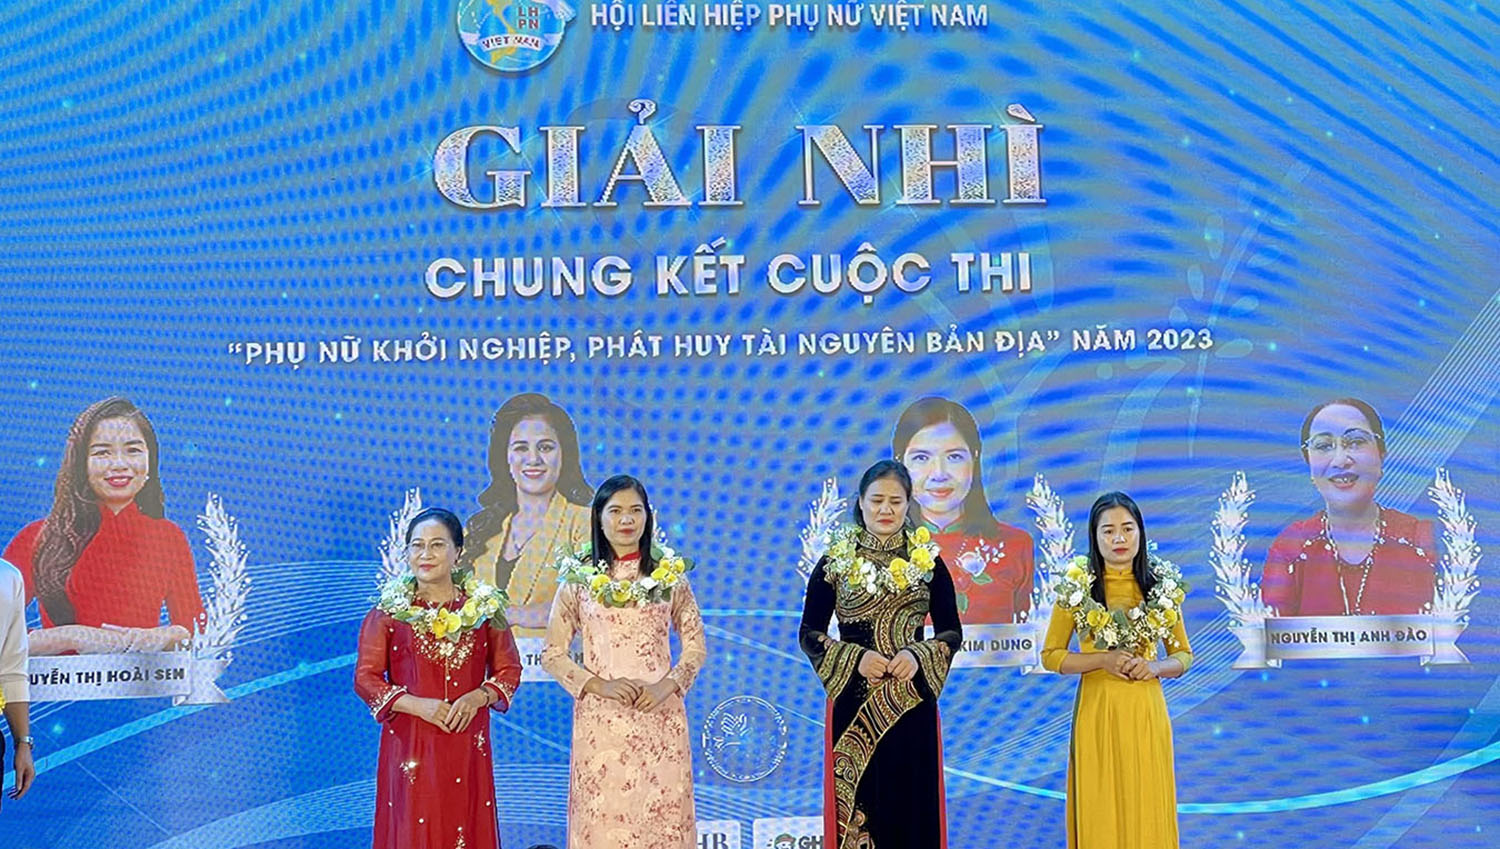 Chị Nguyễn Thị Hoài Sen (ngoài cùng bên phải) được trao giải nhì toàn quốc Cuộc thi “Phụ nữ khởi nghiệp, phát huy tài nguyên bản địa” năm 2023 